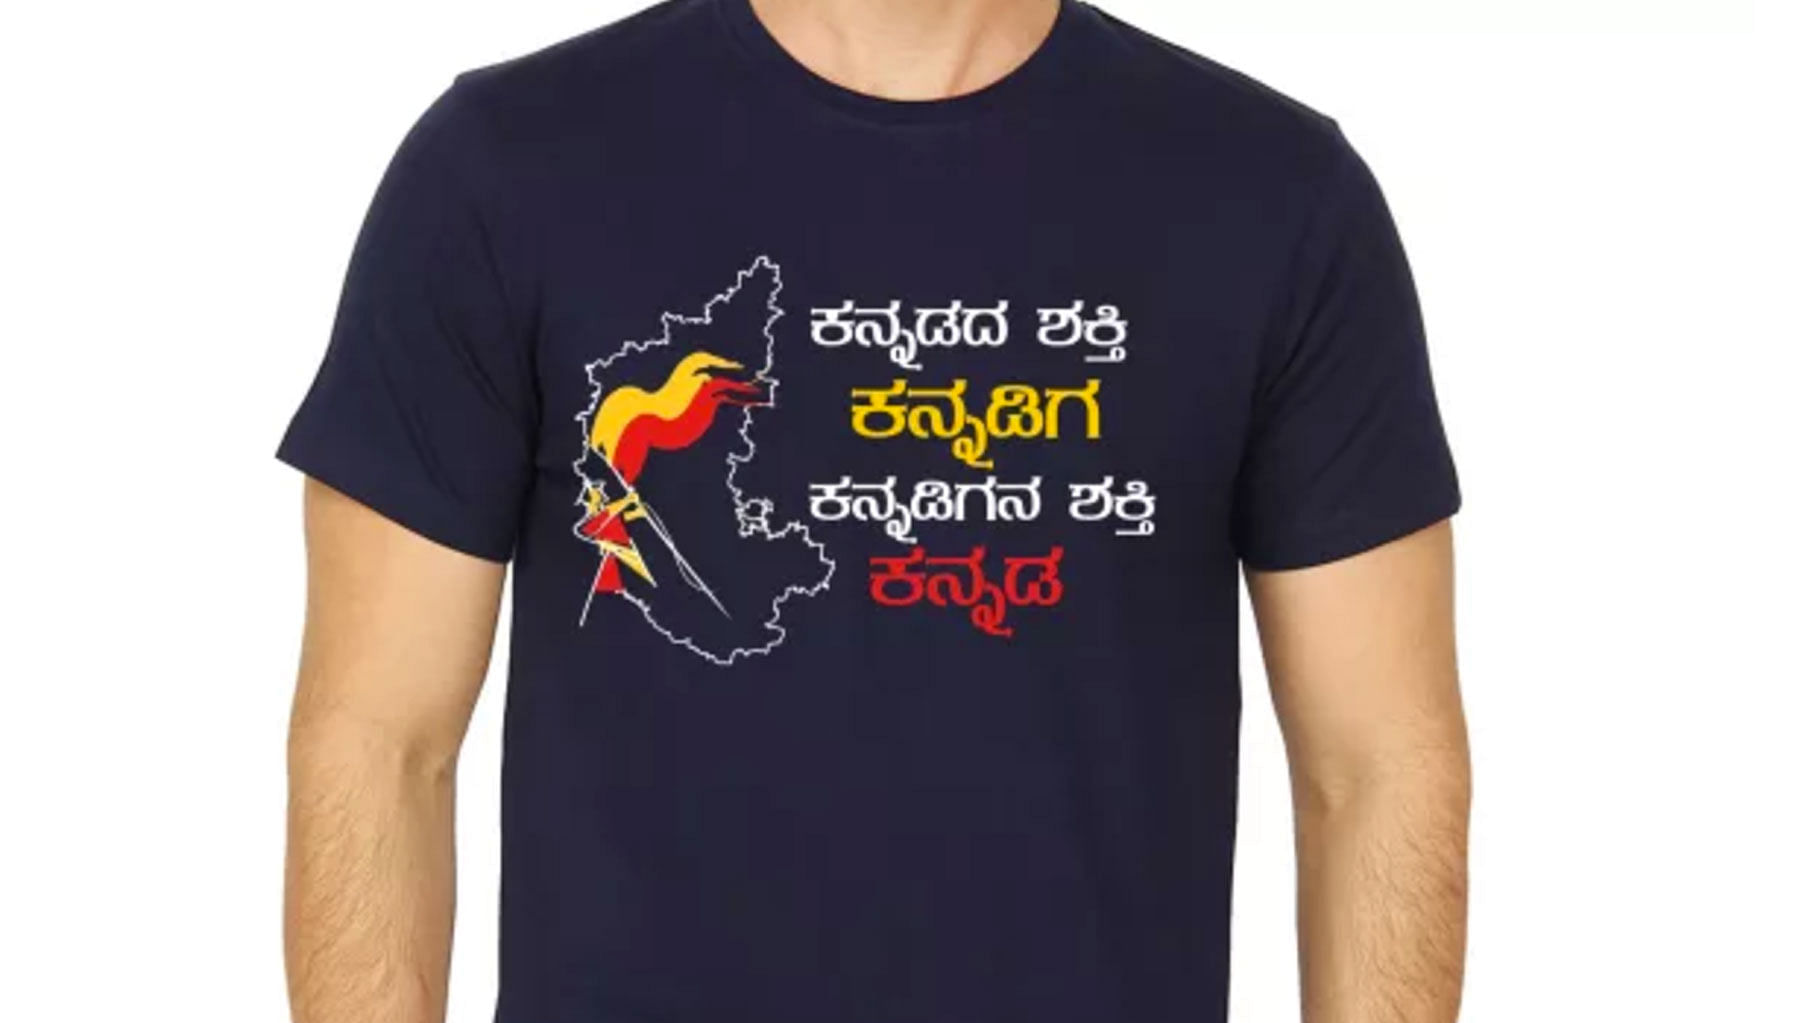 A t-shirt that reads Power of Kannada is Kannadiga and Kannadiga’s power is Kannada (Photo: <a href="http://www.hemmeyakannadiga.com/">www.hemmeyakannadiga.com</a>)